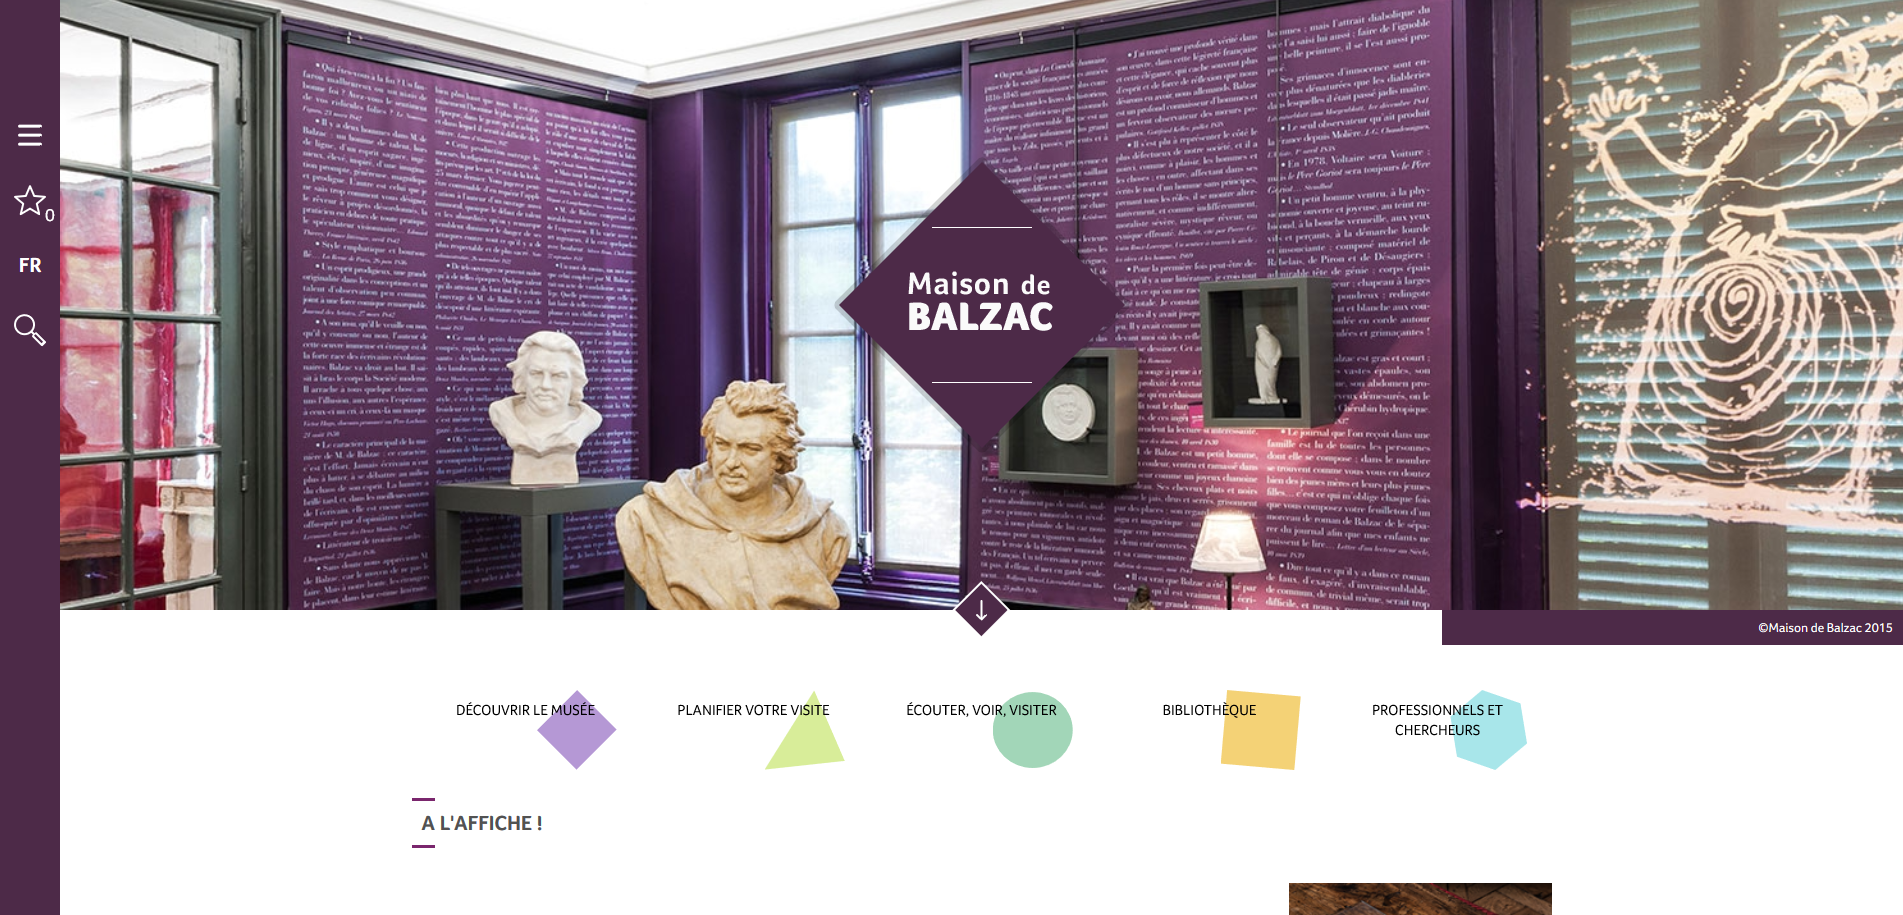 FireShot Screen Capture #127 - 'Maison de Balzac' - maisondebalzac_paris_fr